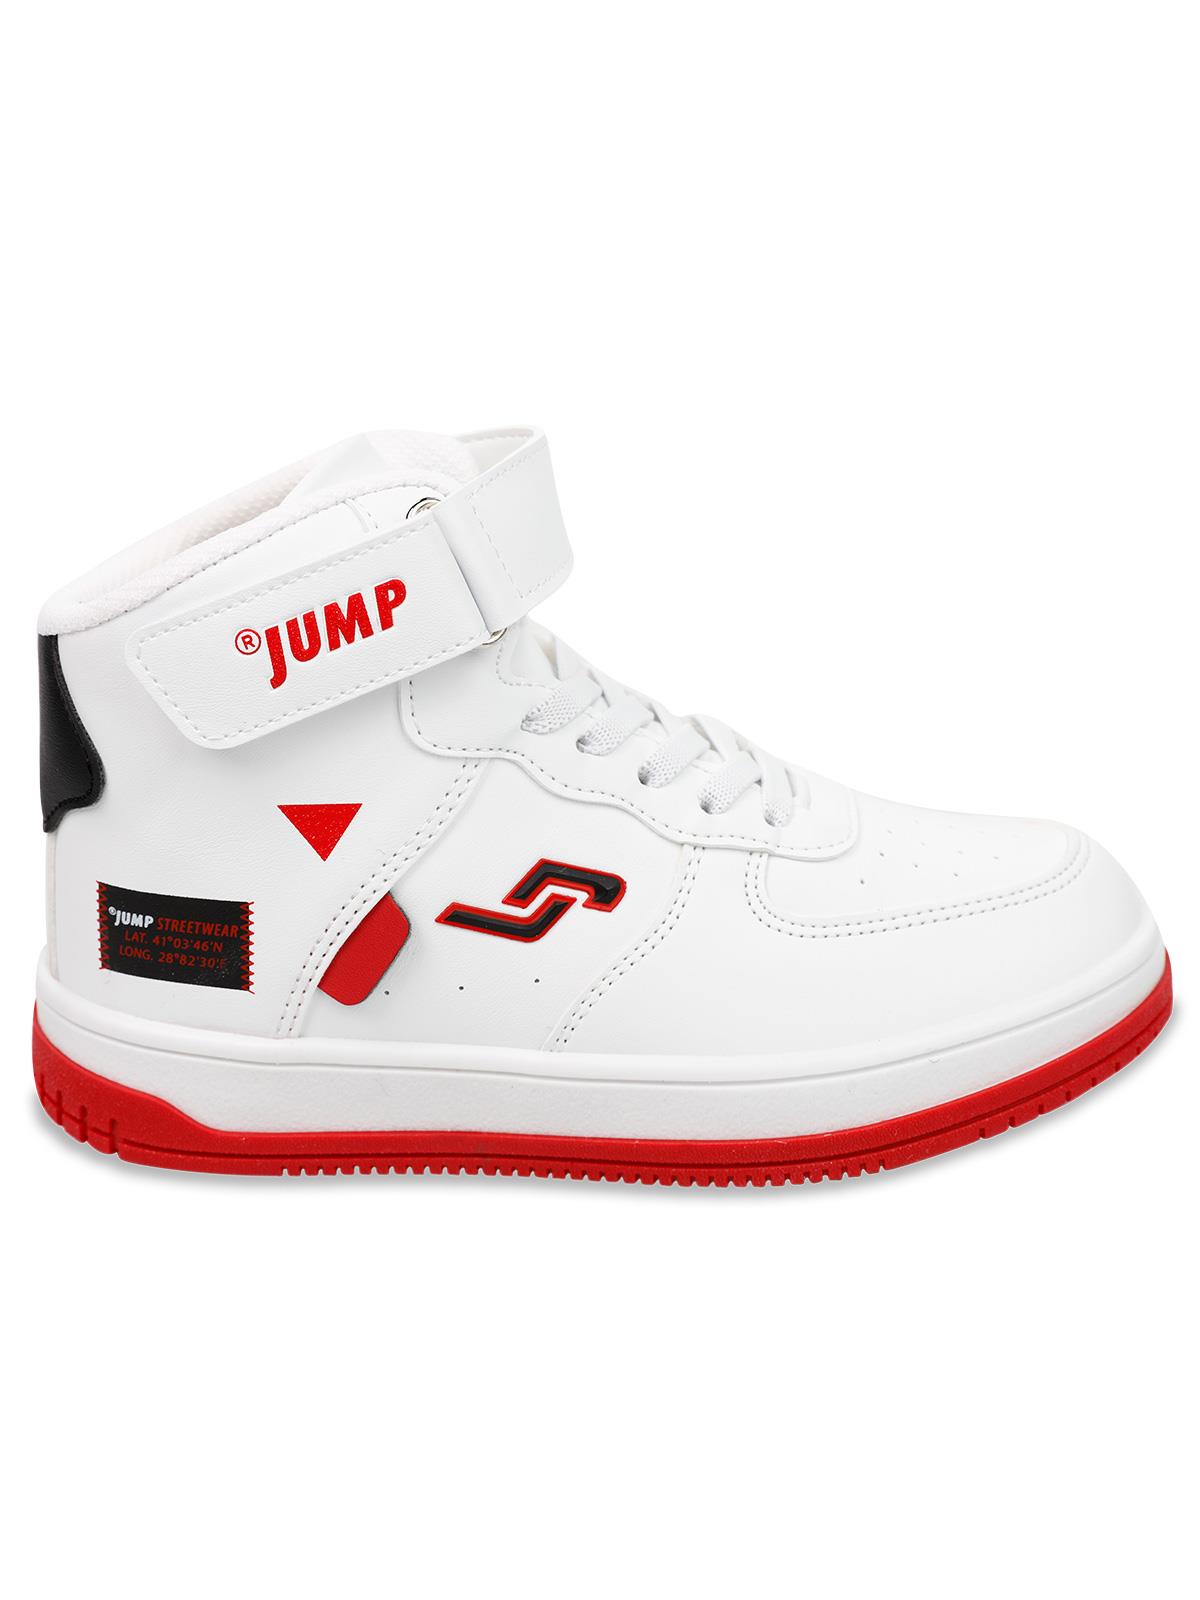 Jump Erkek Çocuk Spor Ayakkabı 31-35 Numara Beyaz